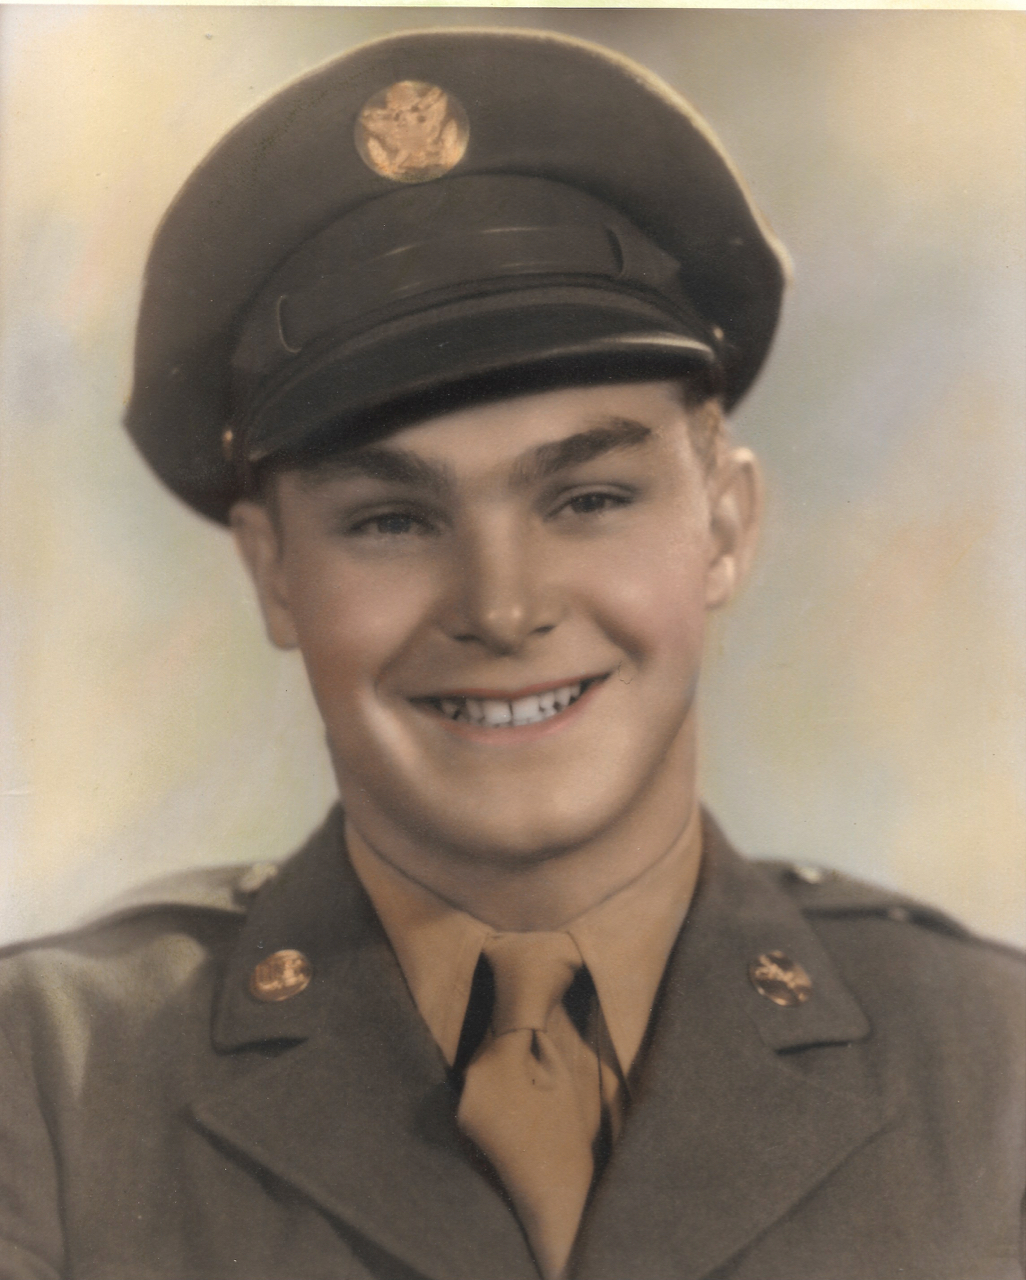 1944-Al Abruzzini 17 years old Army.jpg